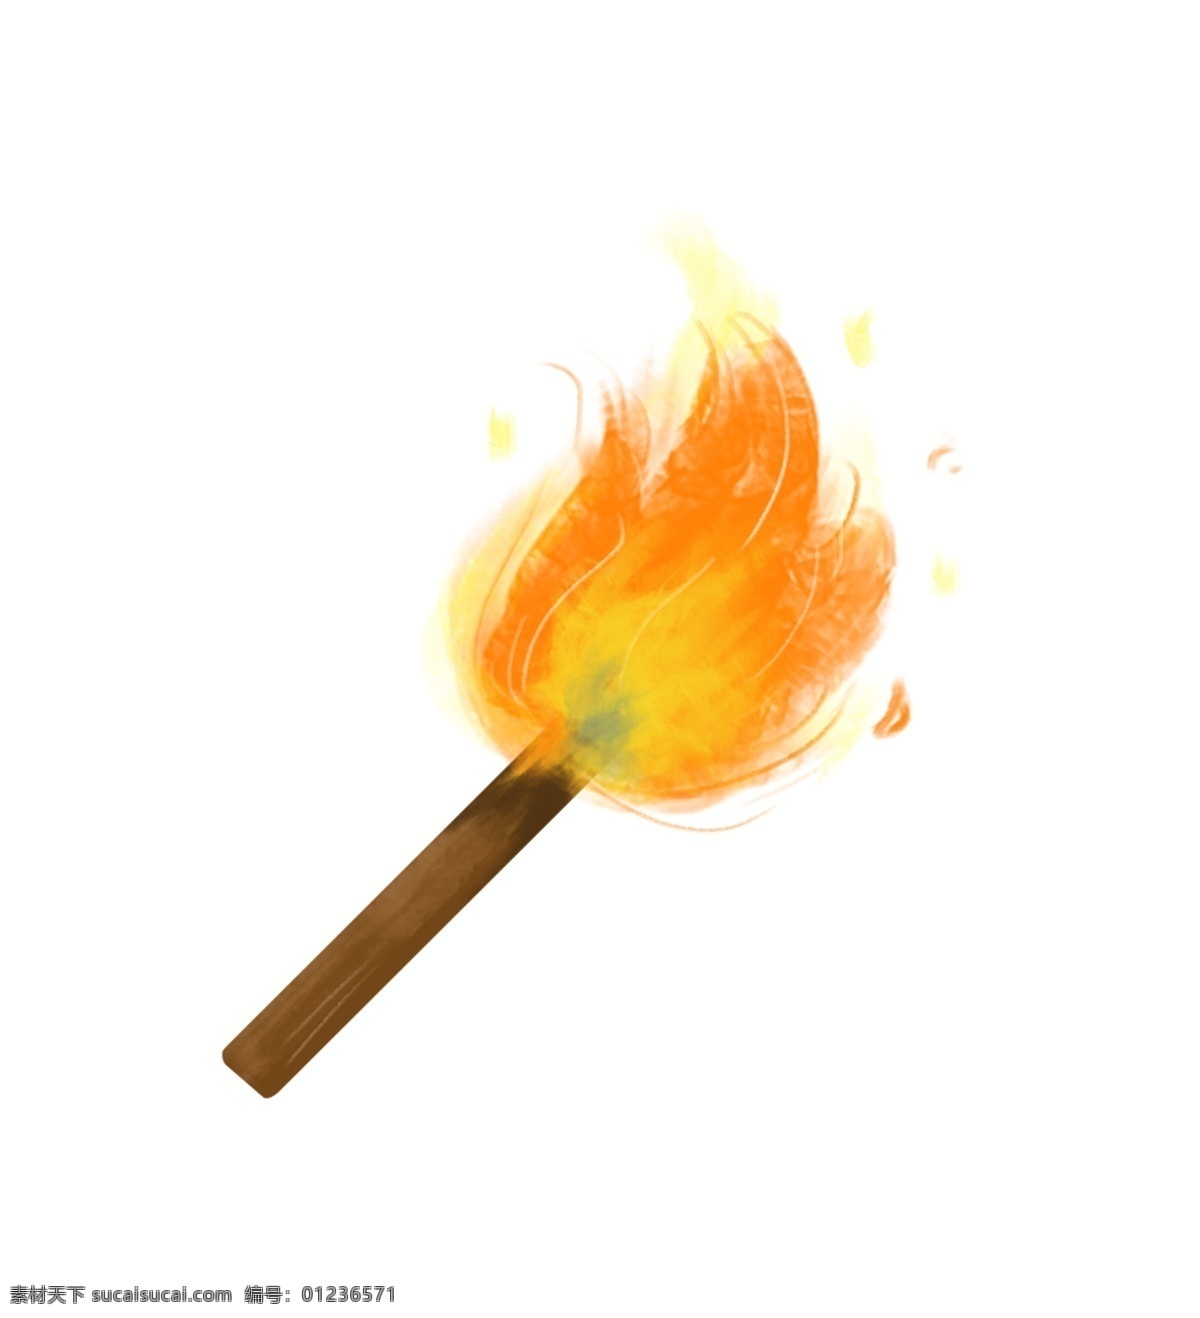 红色 燃烧 火焰 火炬 火苗 火炬消防 喷溅 火热 热度 简洁 扁平 正在 卡通手绘 黄色